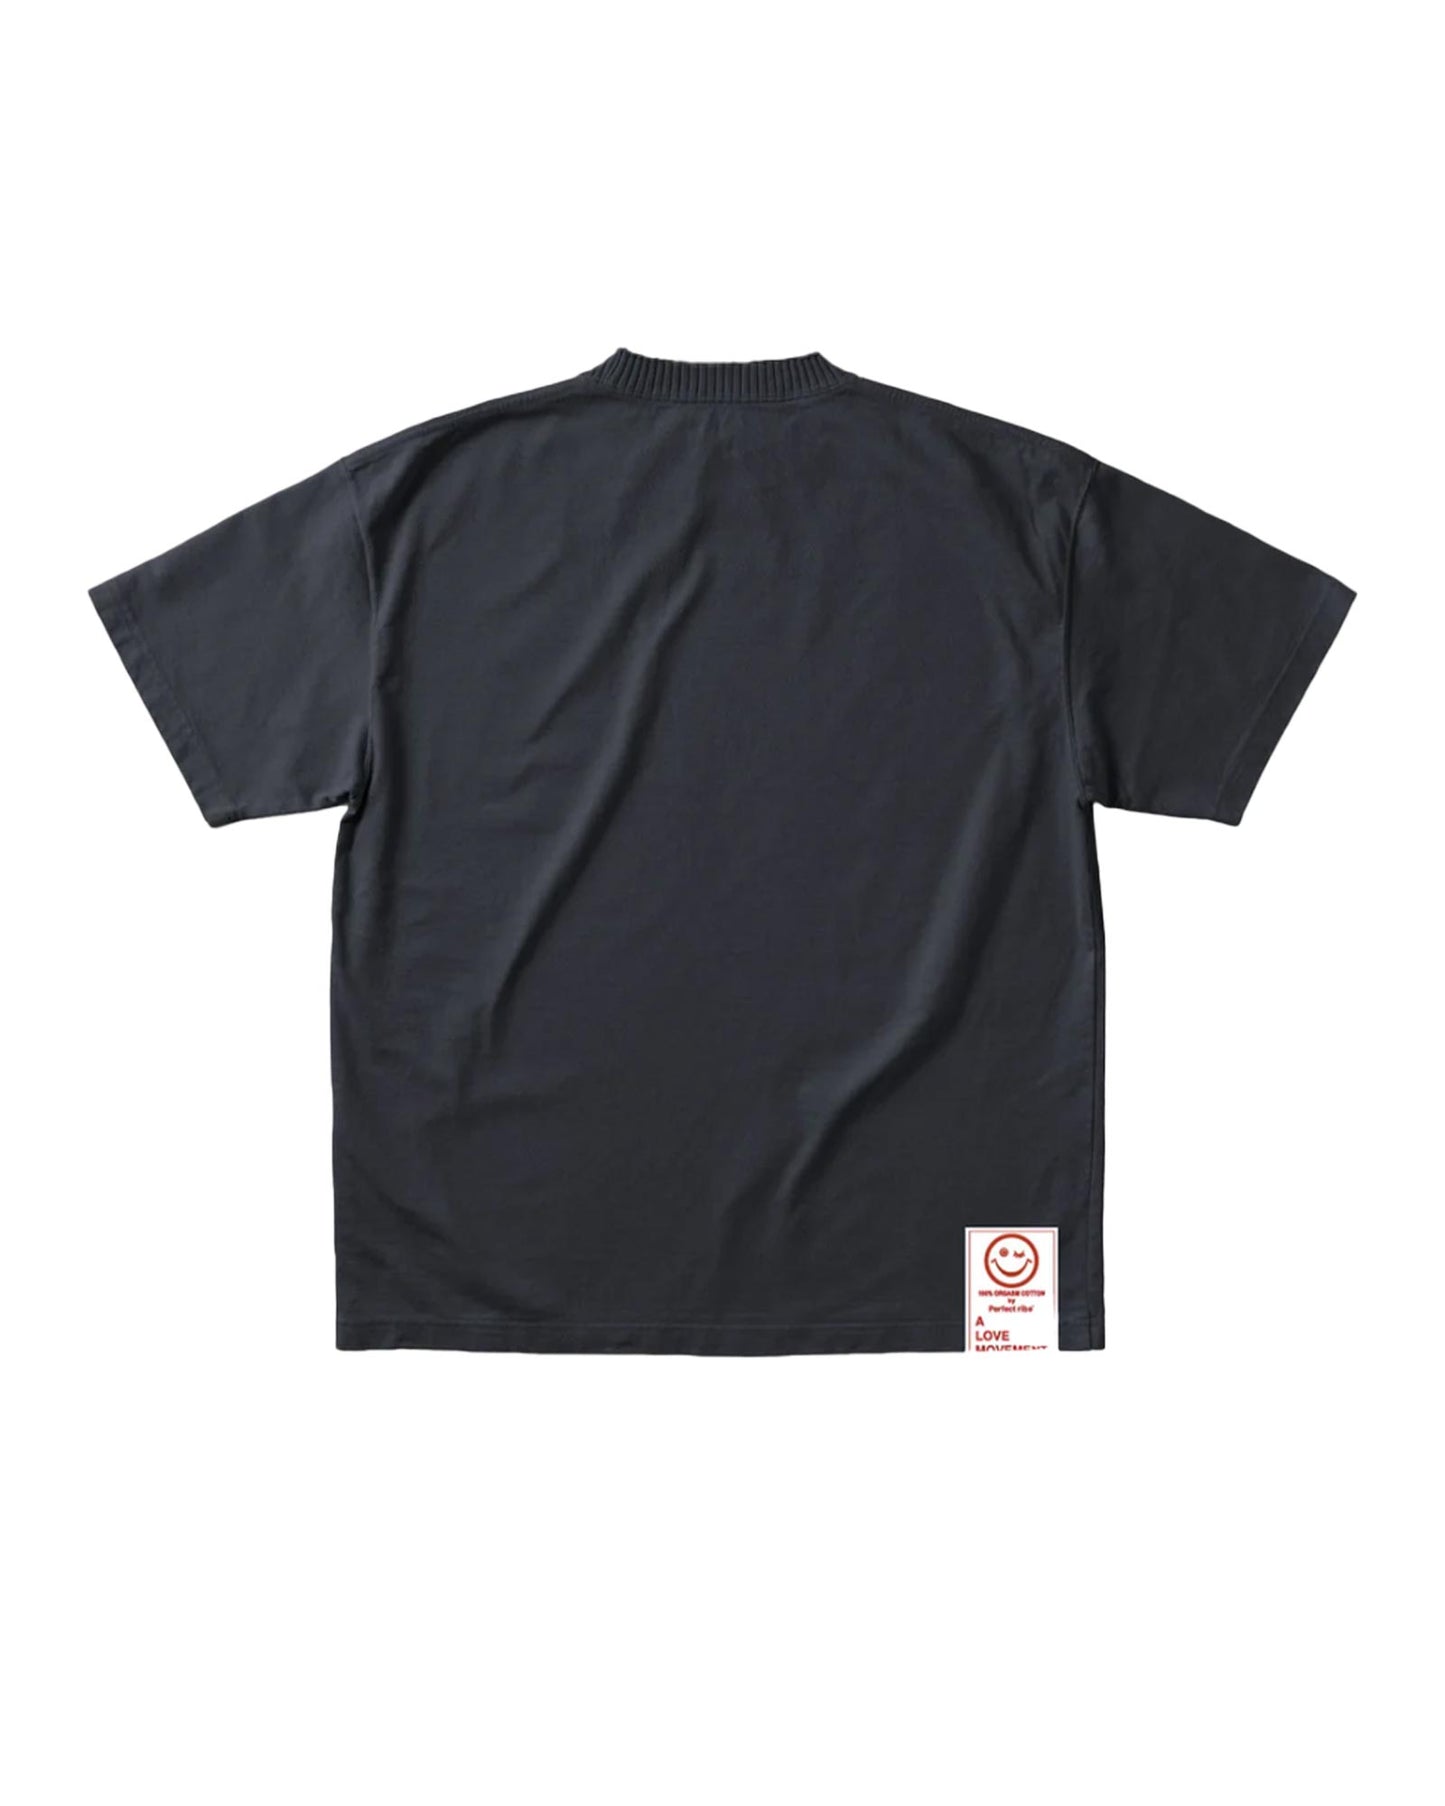 パーフェクトリブス/(RELAX NO PROBLEM) Basic Short Sleeve T Shirts/Tシャツ/Black